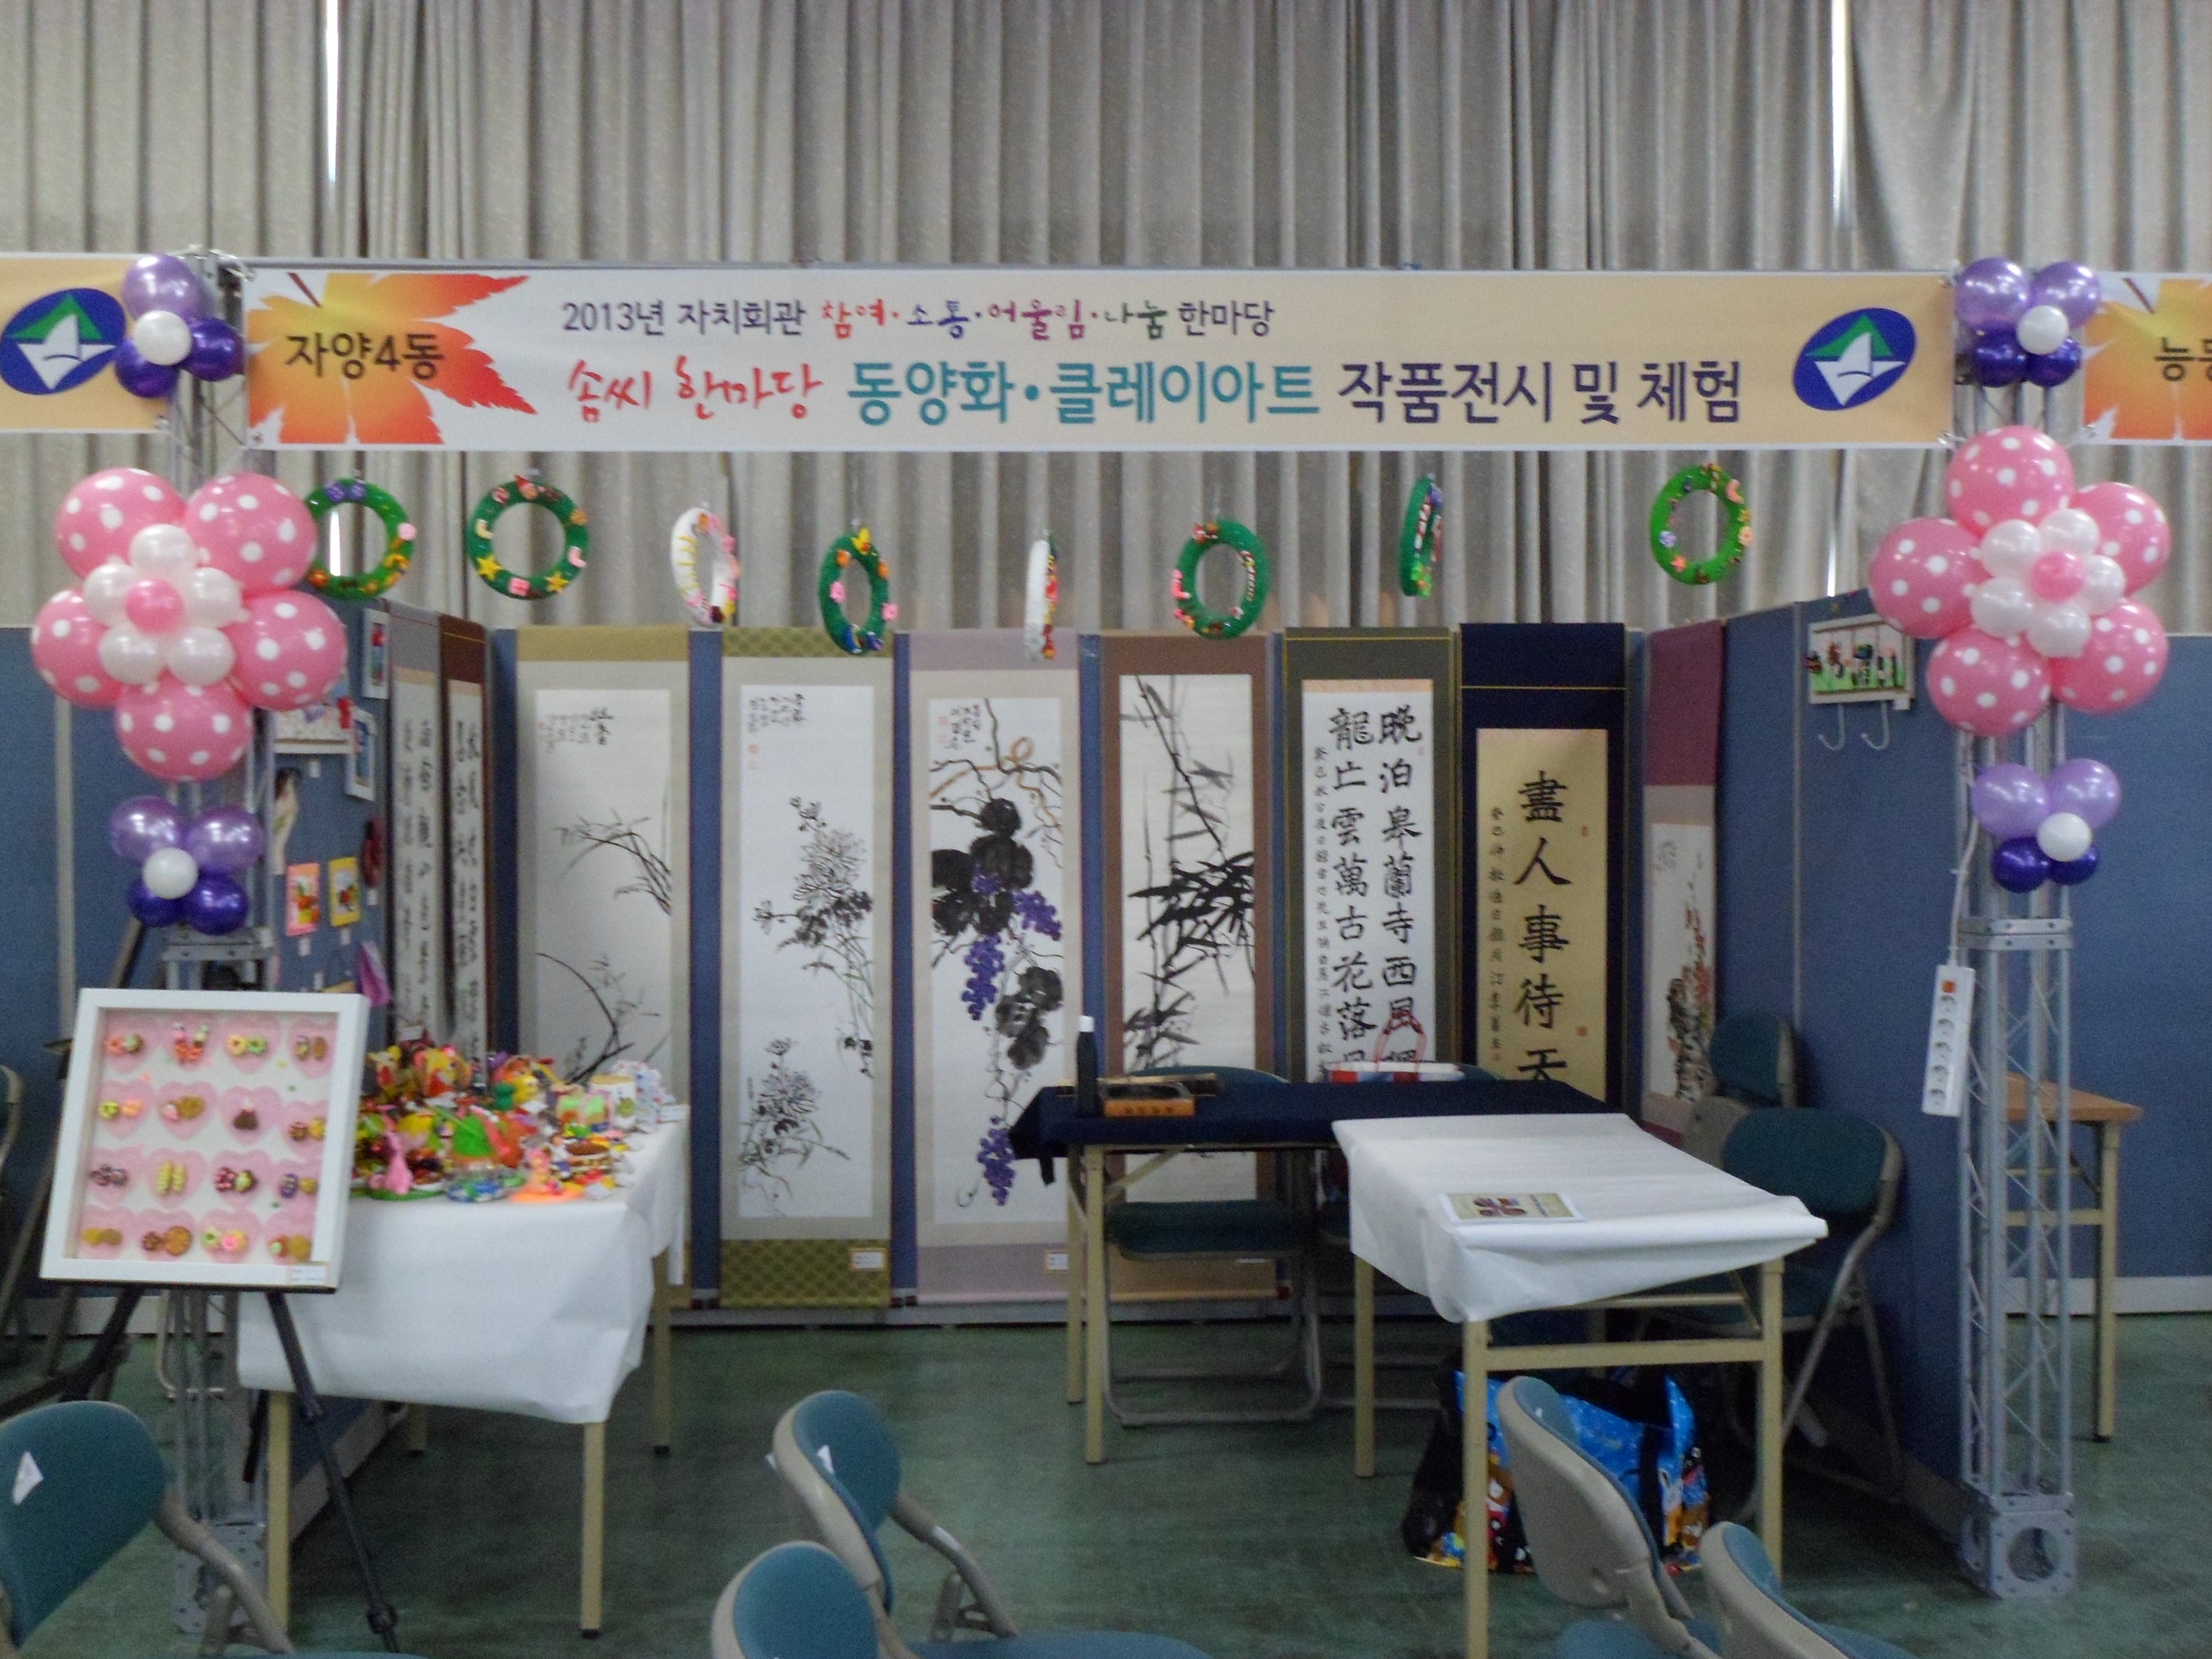 자양4동 솜씨한마당 자치회관프로그램 발표회 개최 20131122jpg138508435224891.jpg